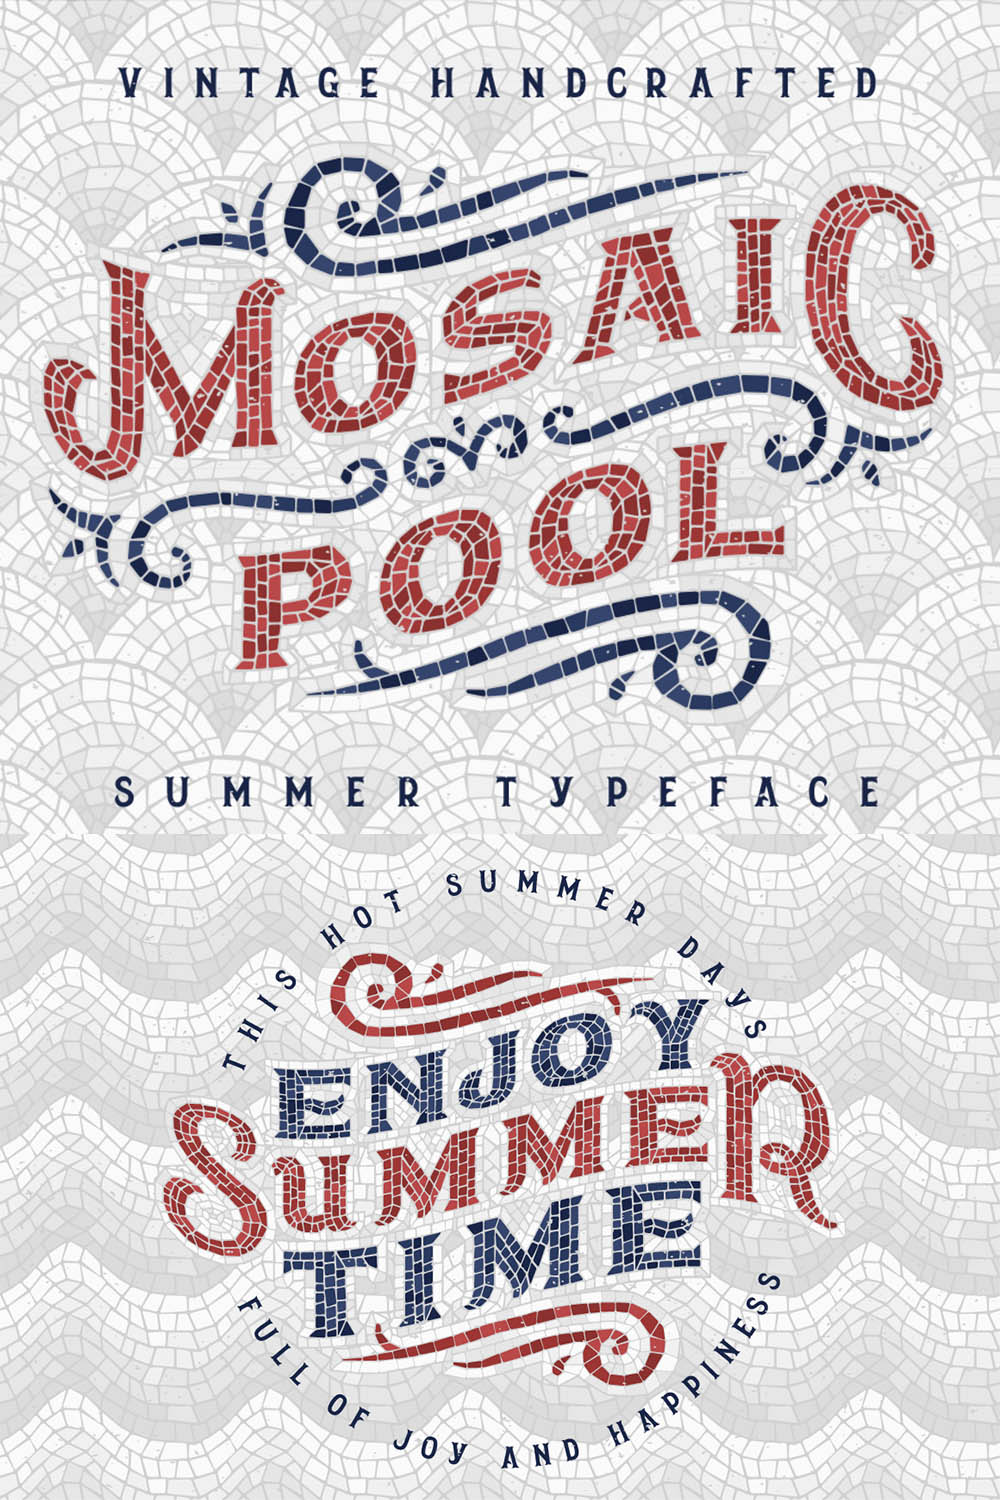 Mosaic Pool Typeface Pinterest image.